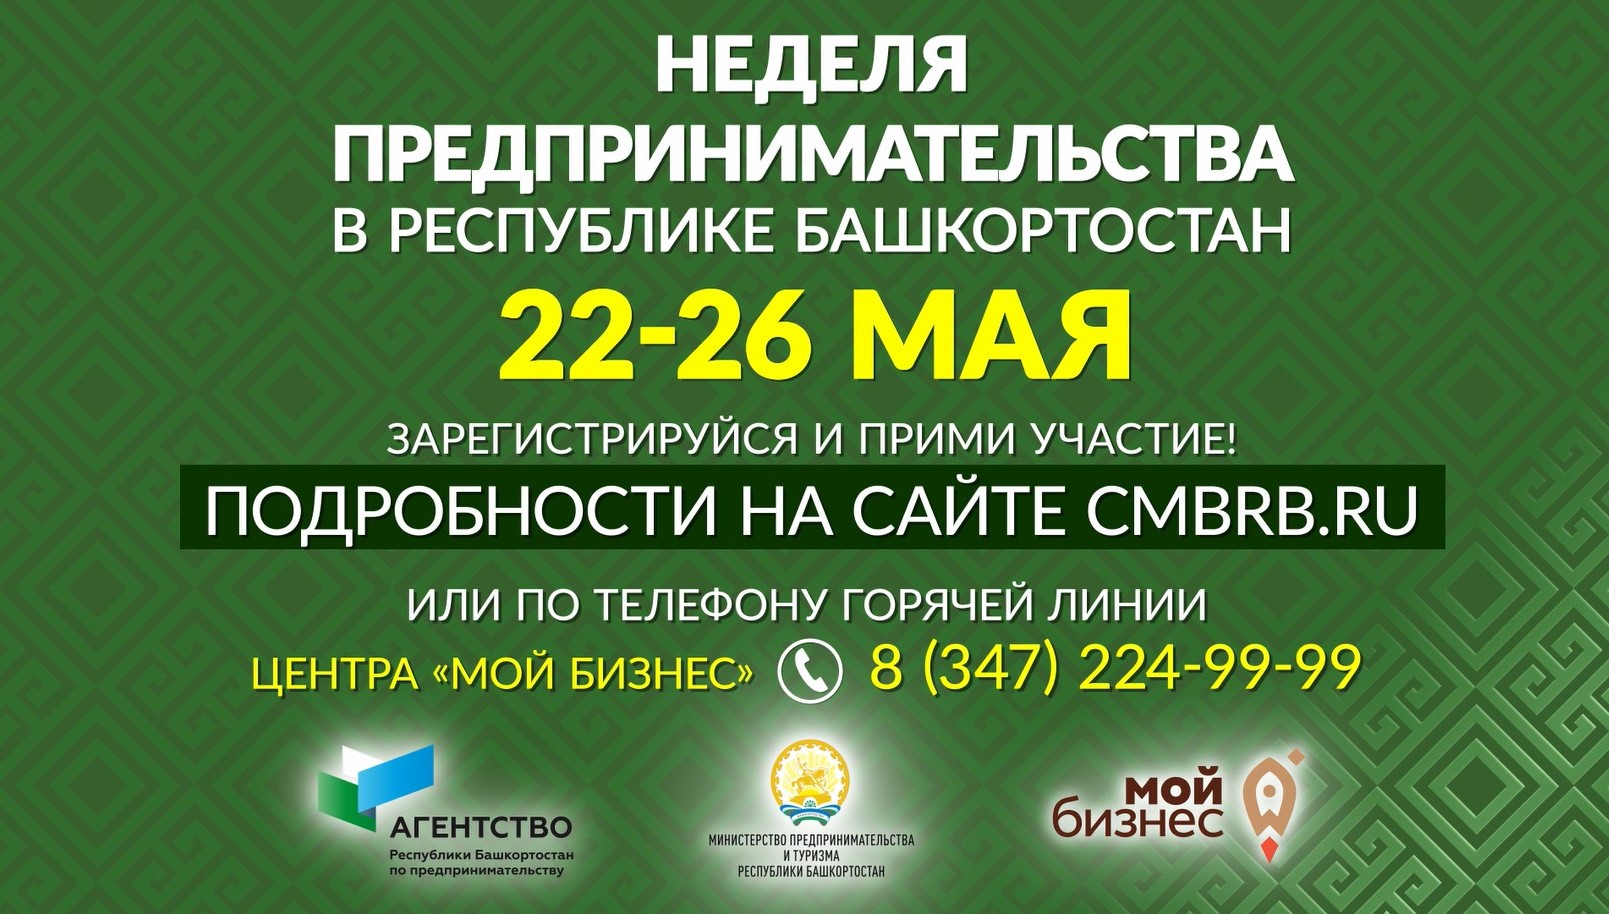 Неделя предпринимательства в Республике Башкортостан пройдет с 22 по 26 мая